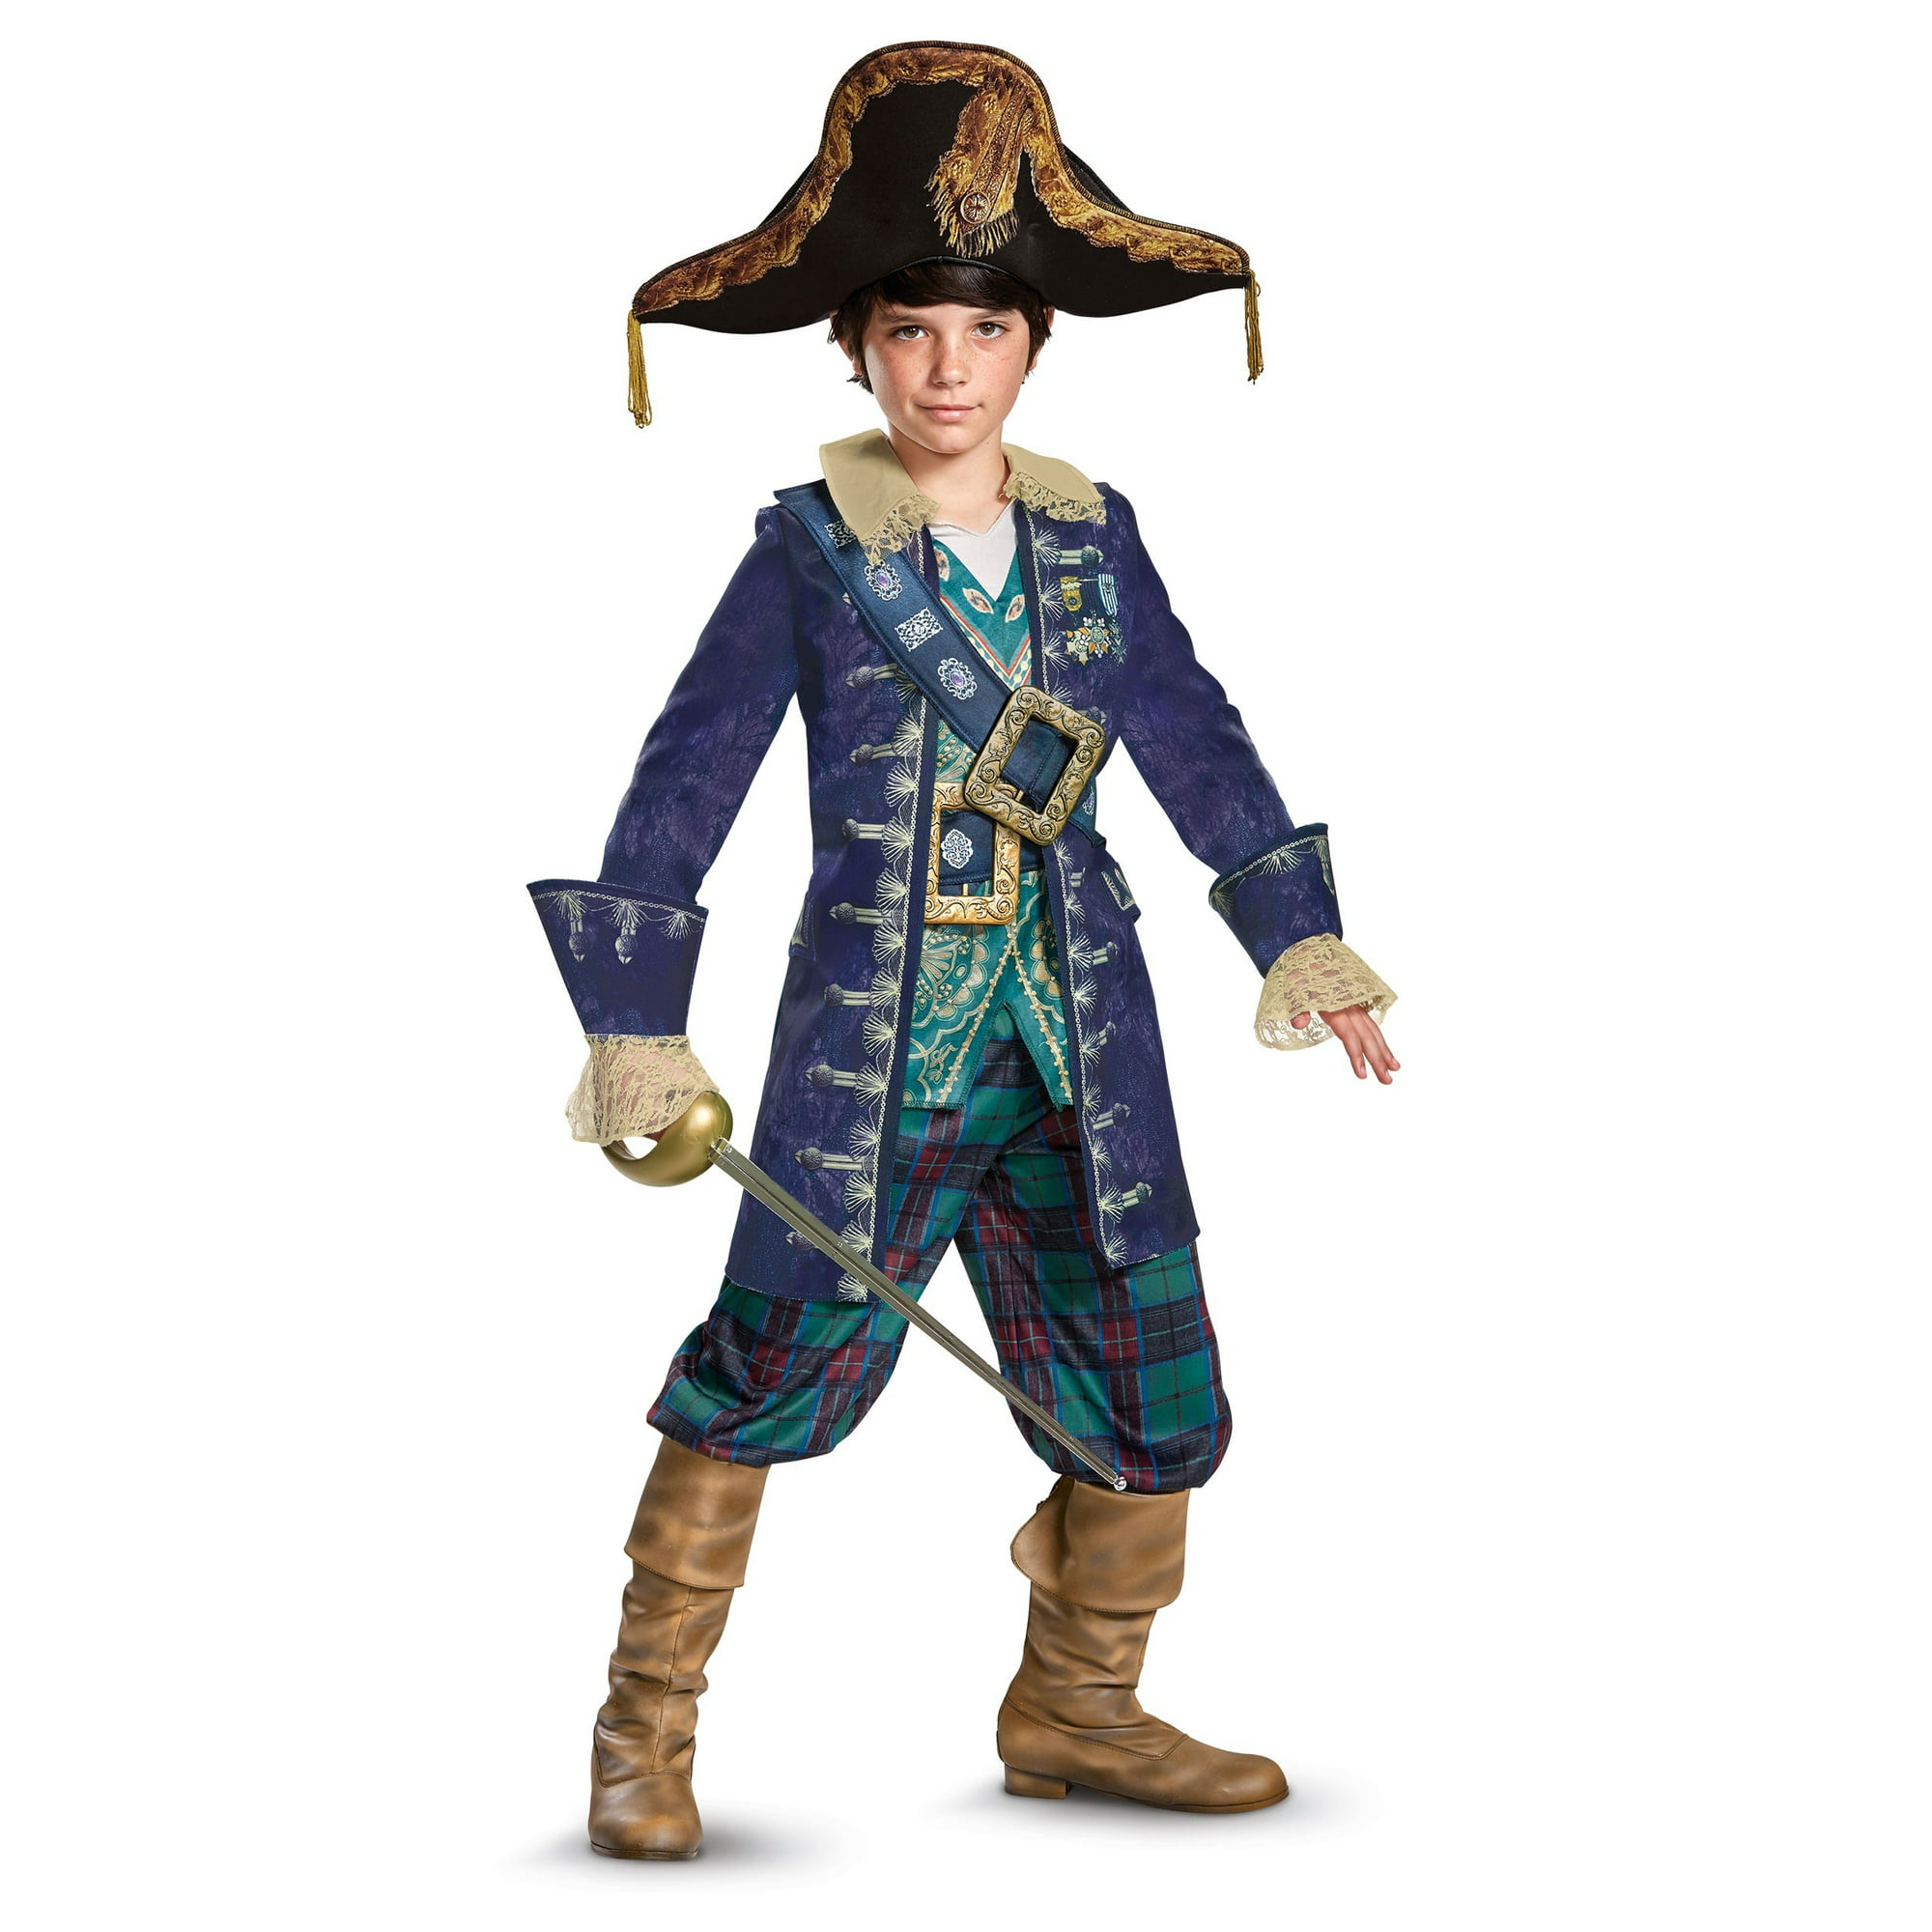 captain barbossa costume - telenovisa43.com.